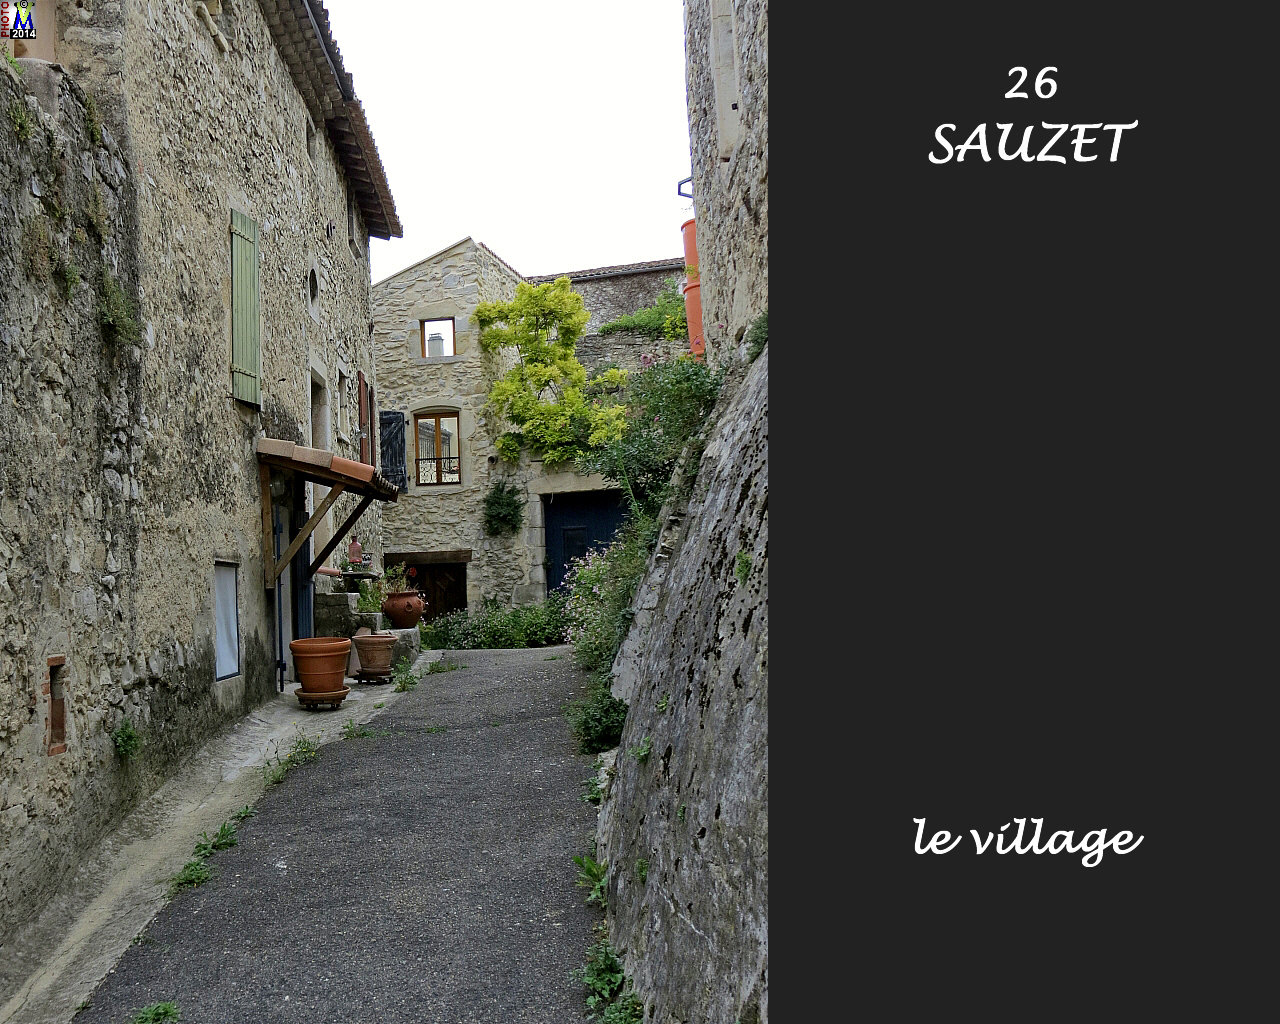 26SAUZET_village_138.jpg